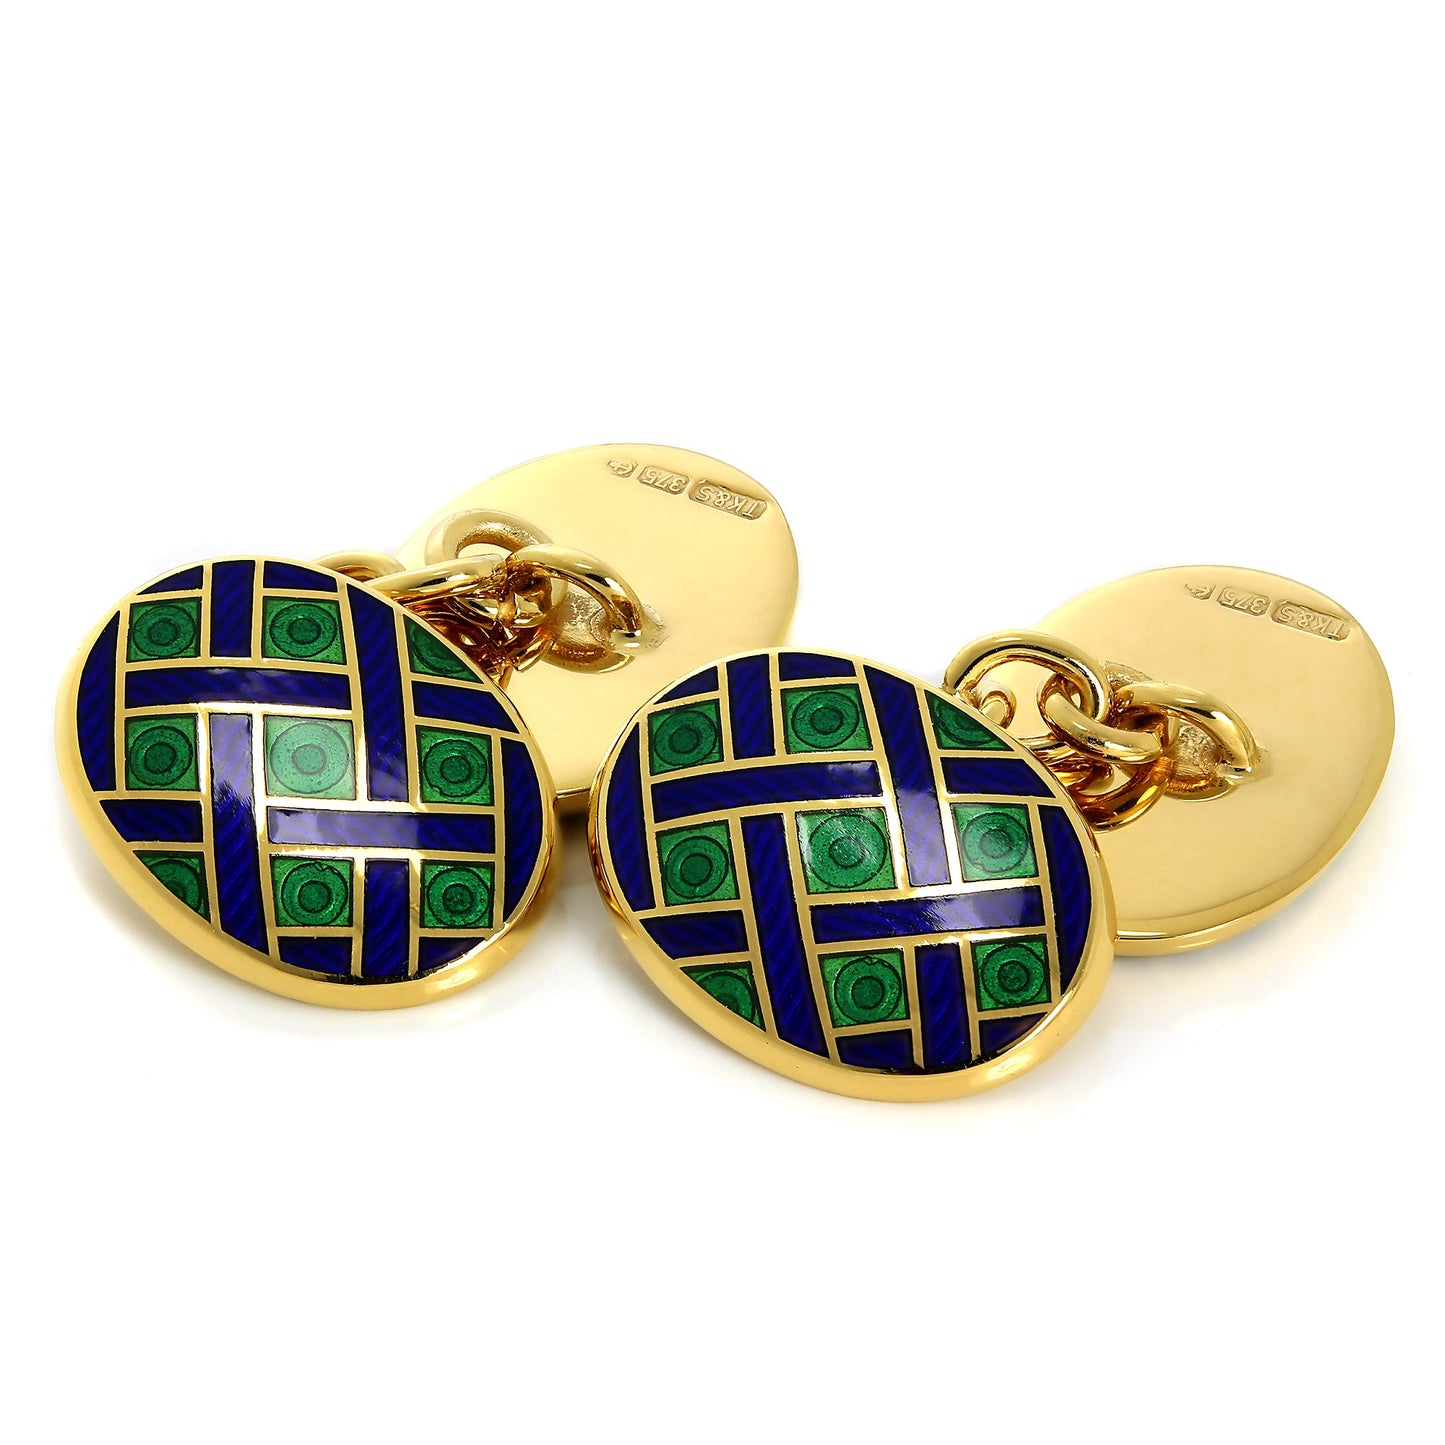 9ct Gold Blue & Green Enamel Weave Pattern Double Sided Chain Oval Cufflinks